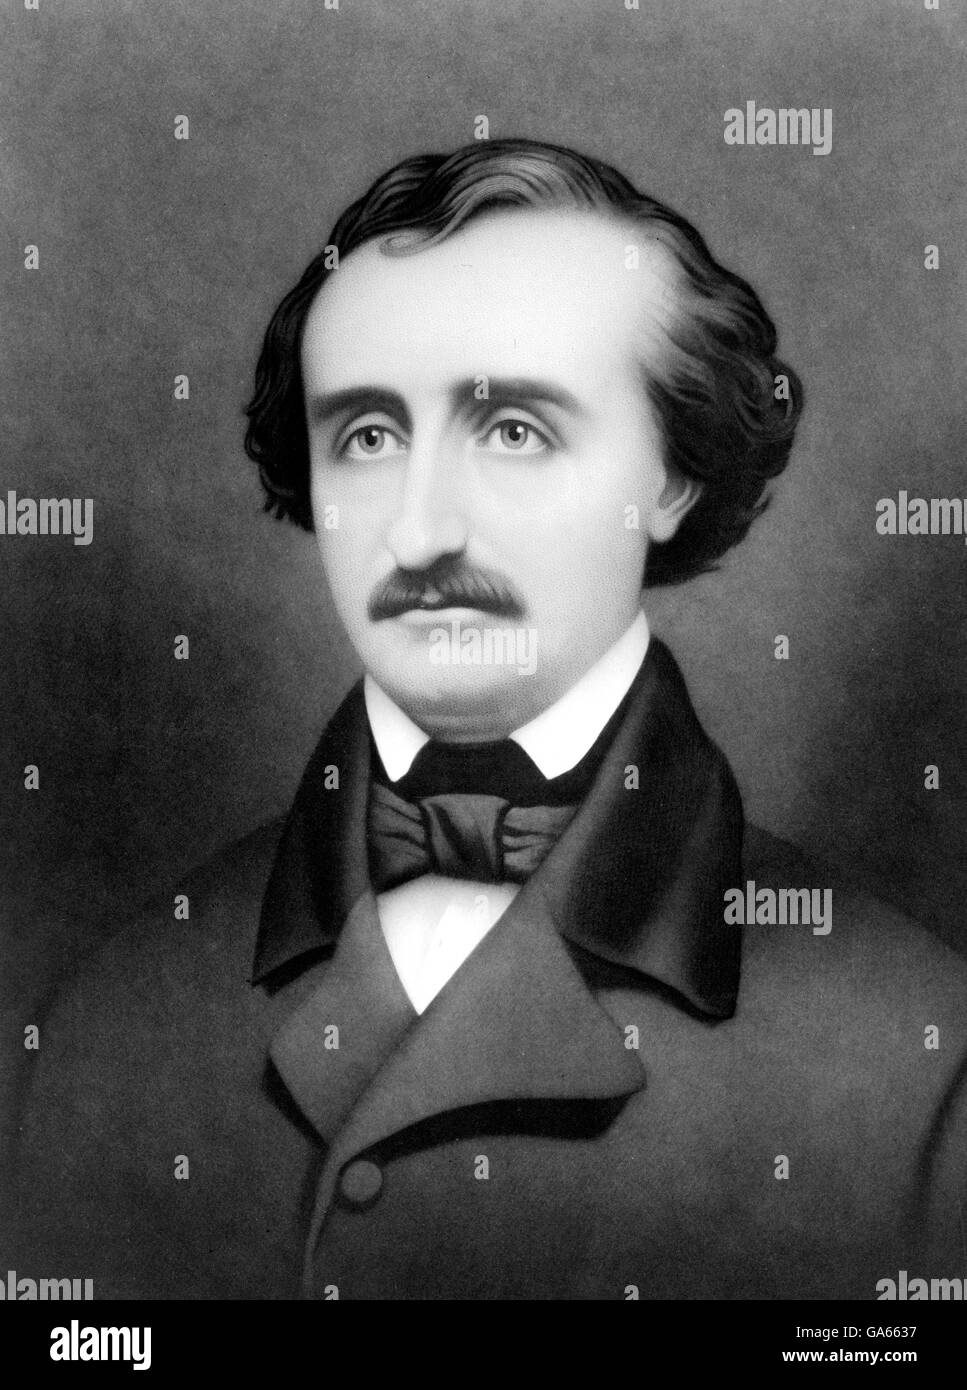 Edgar Allan Poe. Ritratto dello scrittore americano Edgar Allan Poe (nato Poe Edgar; 1809-1849). Ritratto di William Sartain, 1896 Foto Stock